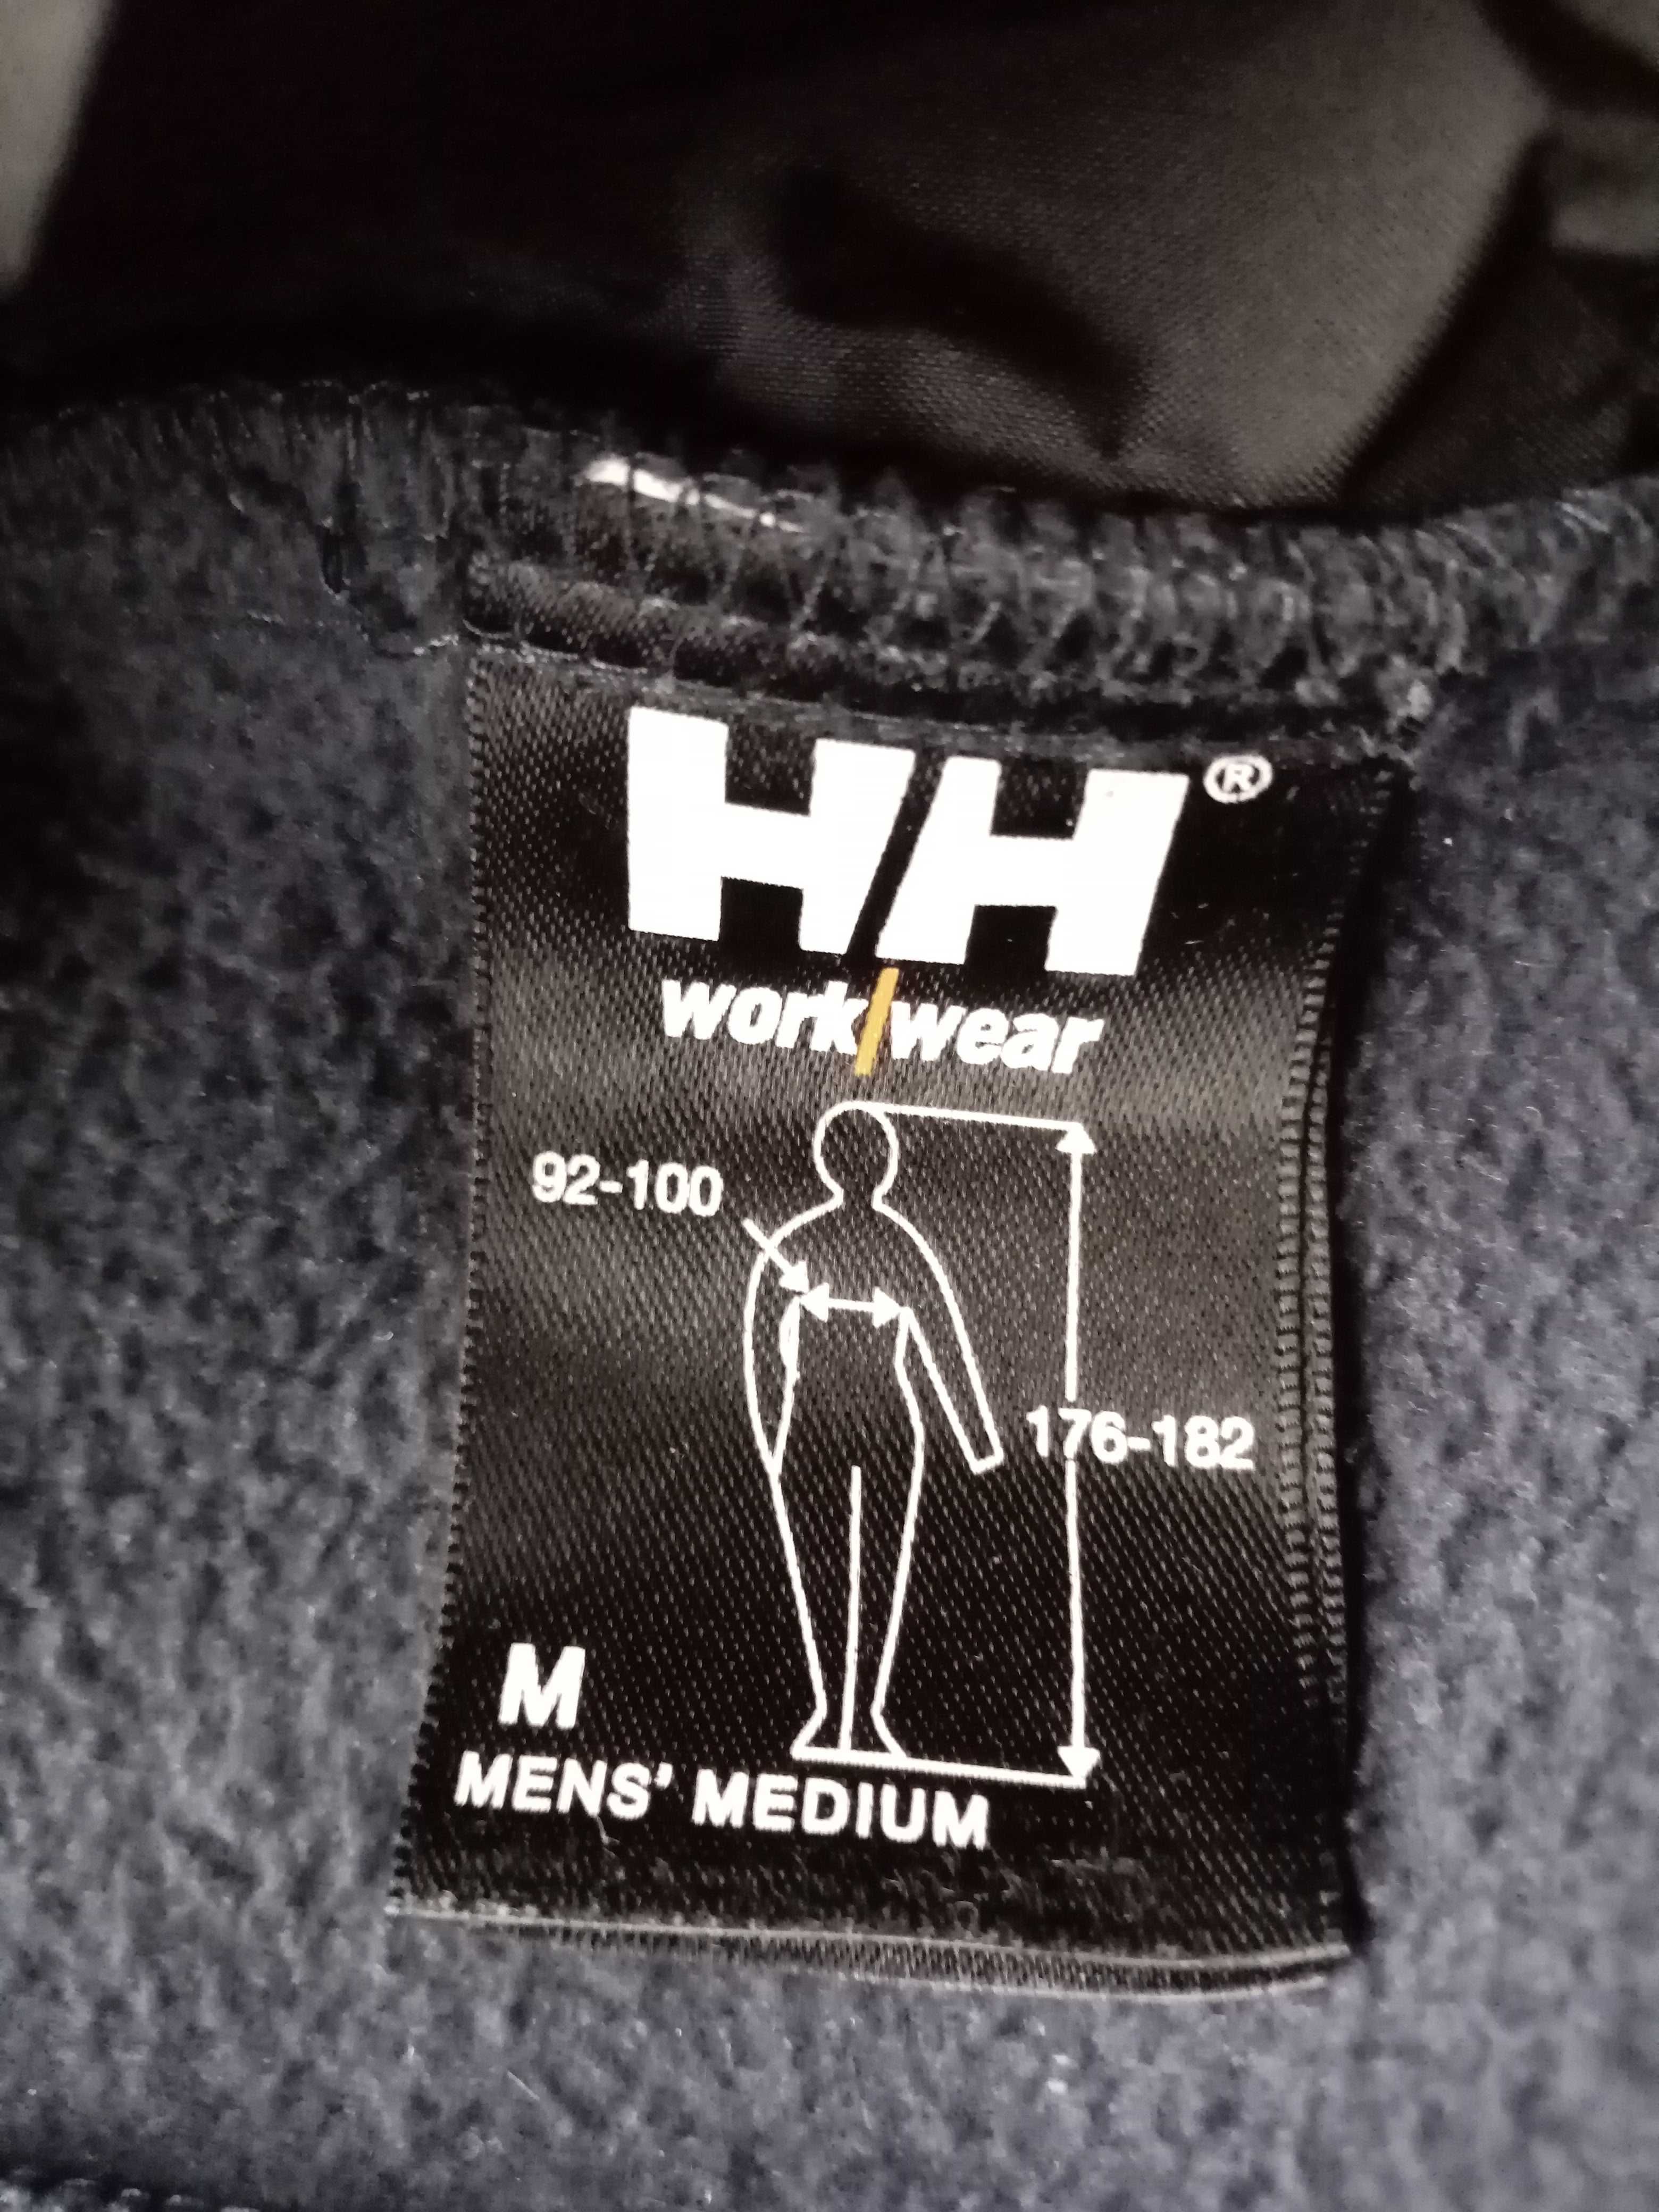 робоча флісова куртка Helly Hansen - Work wear - M - Engelbert Strauss